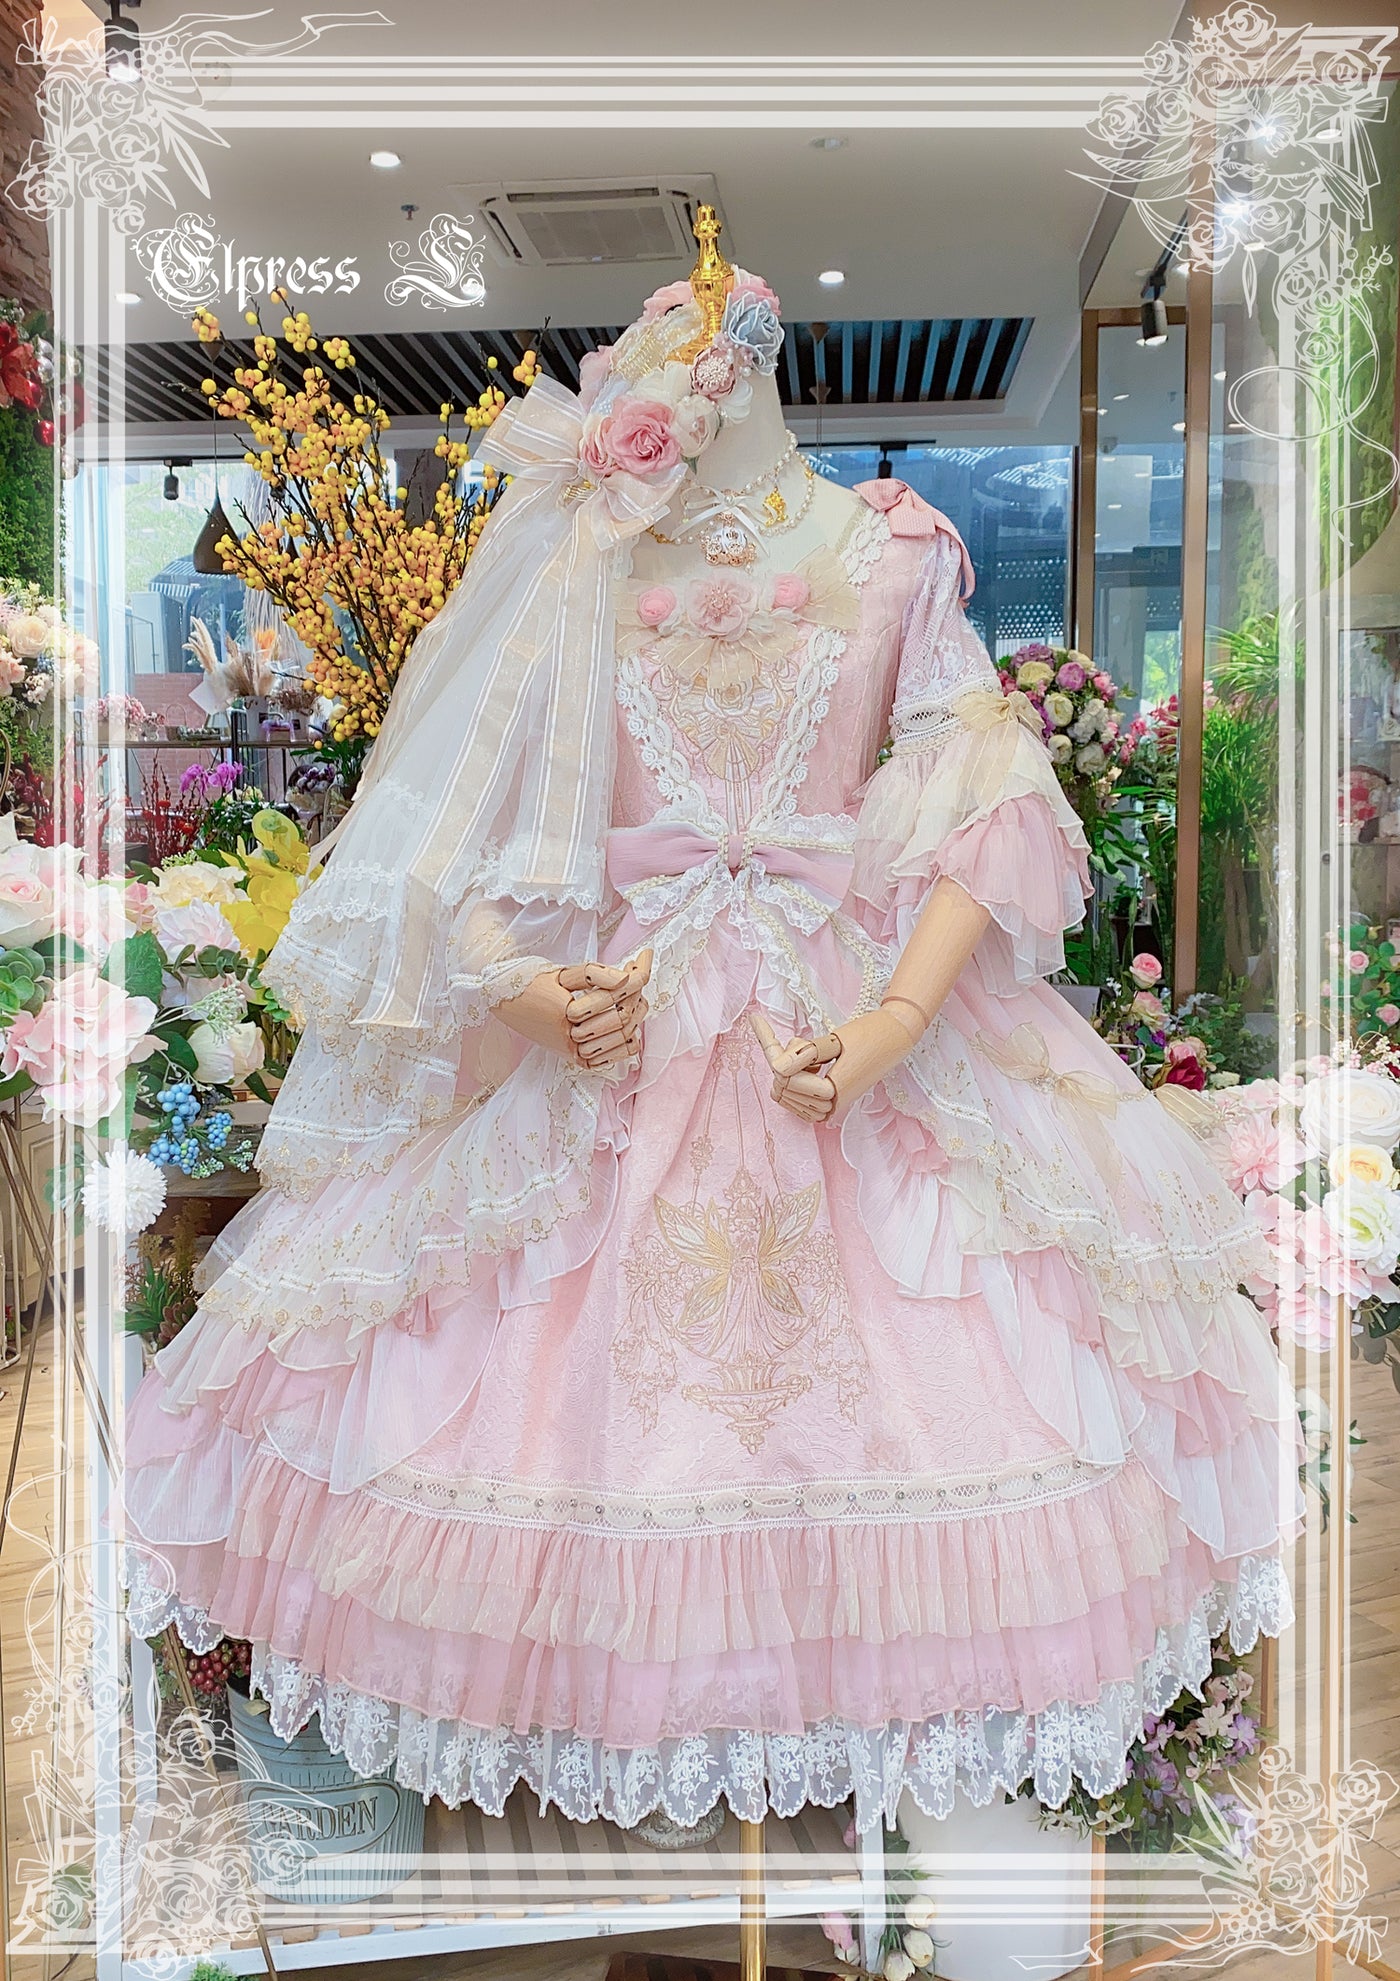 Elpress L~Goblin Kingdom~ Embroidered Lolita OP Dress   